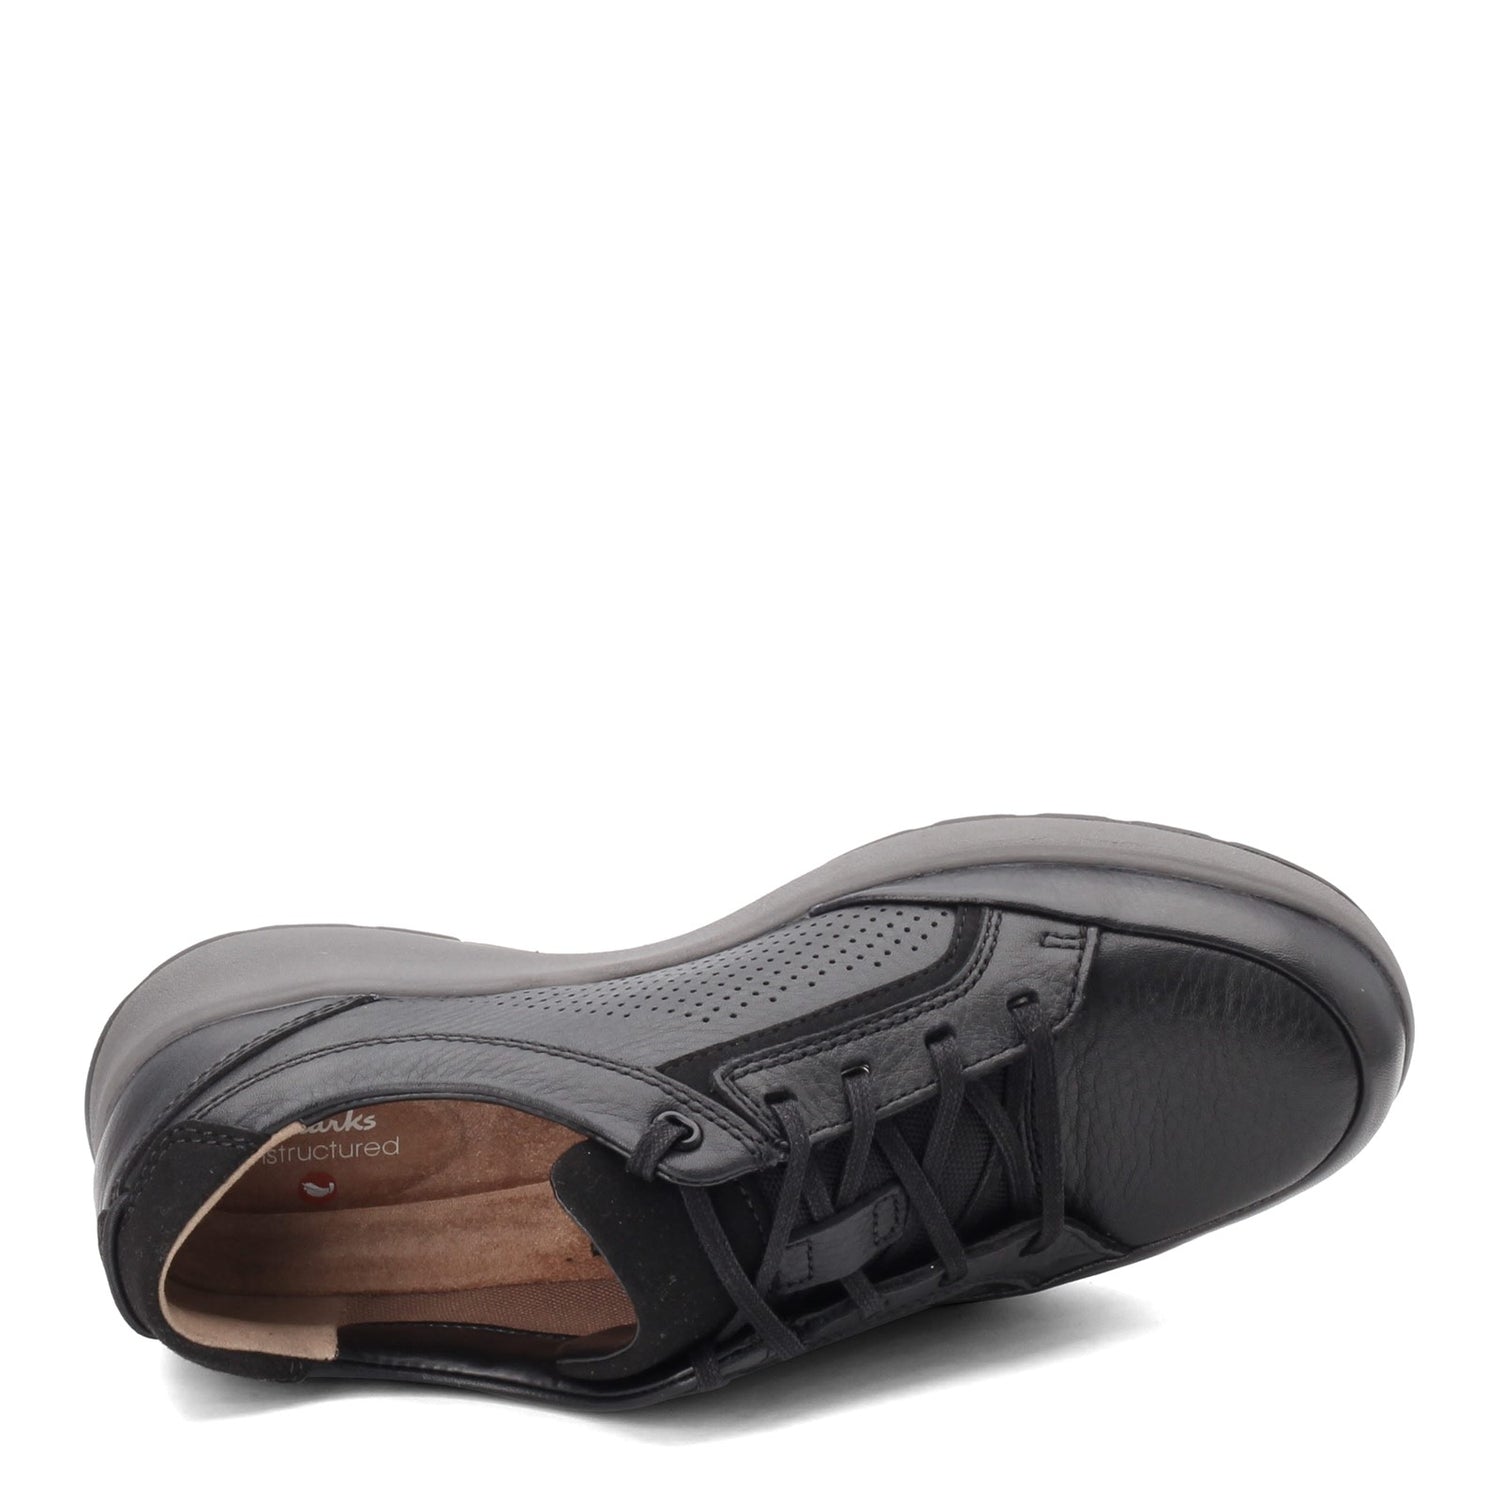 Peltz Shoes  Men's Clarks Un Trail Form Sneaker BLACK LEATHER 26146641